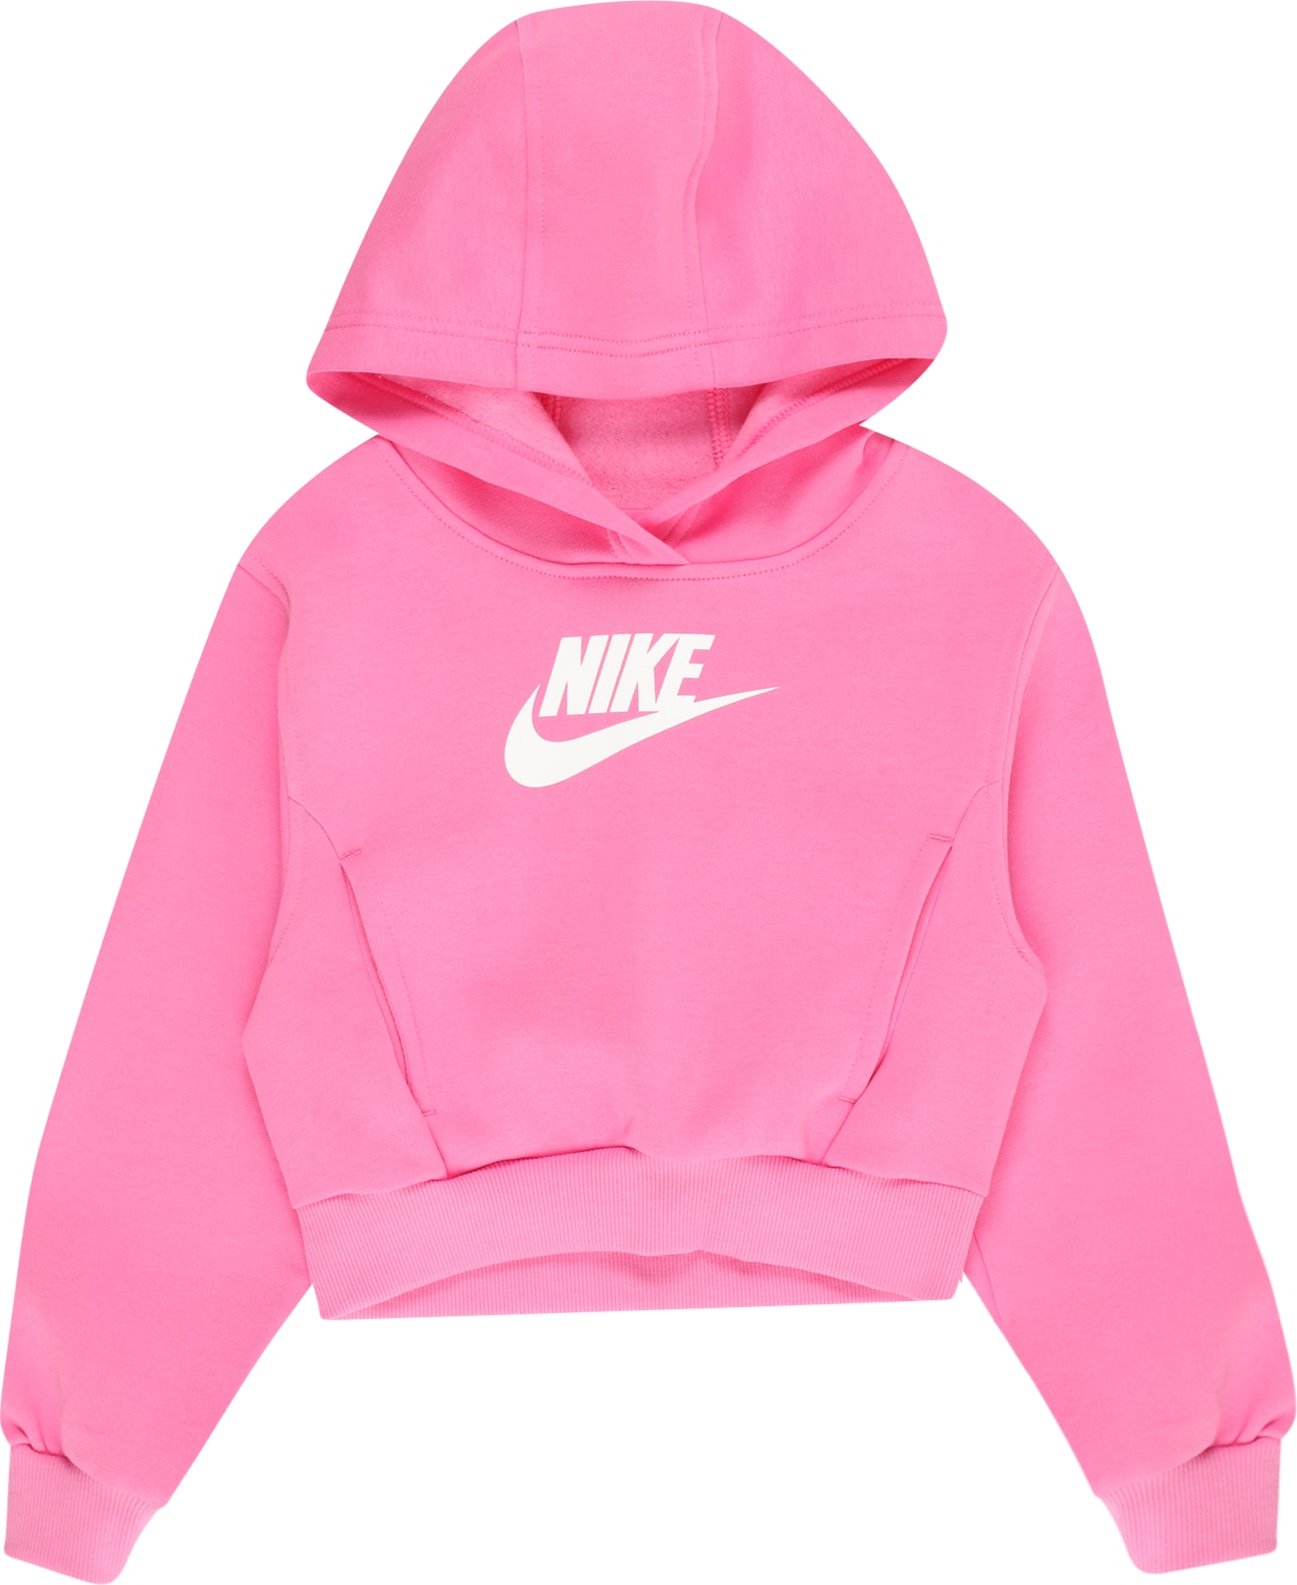 Mikina Nike Sportswear pink / bílá